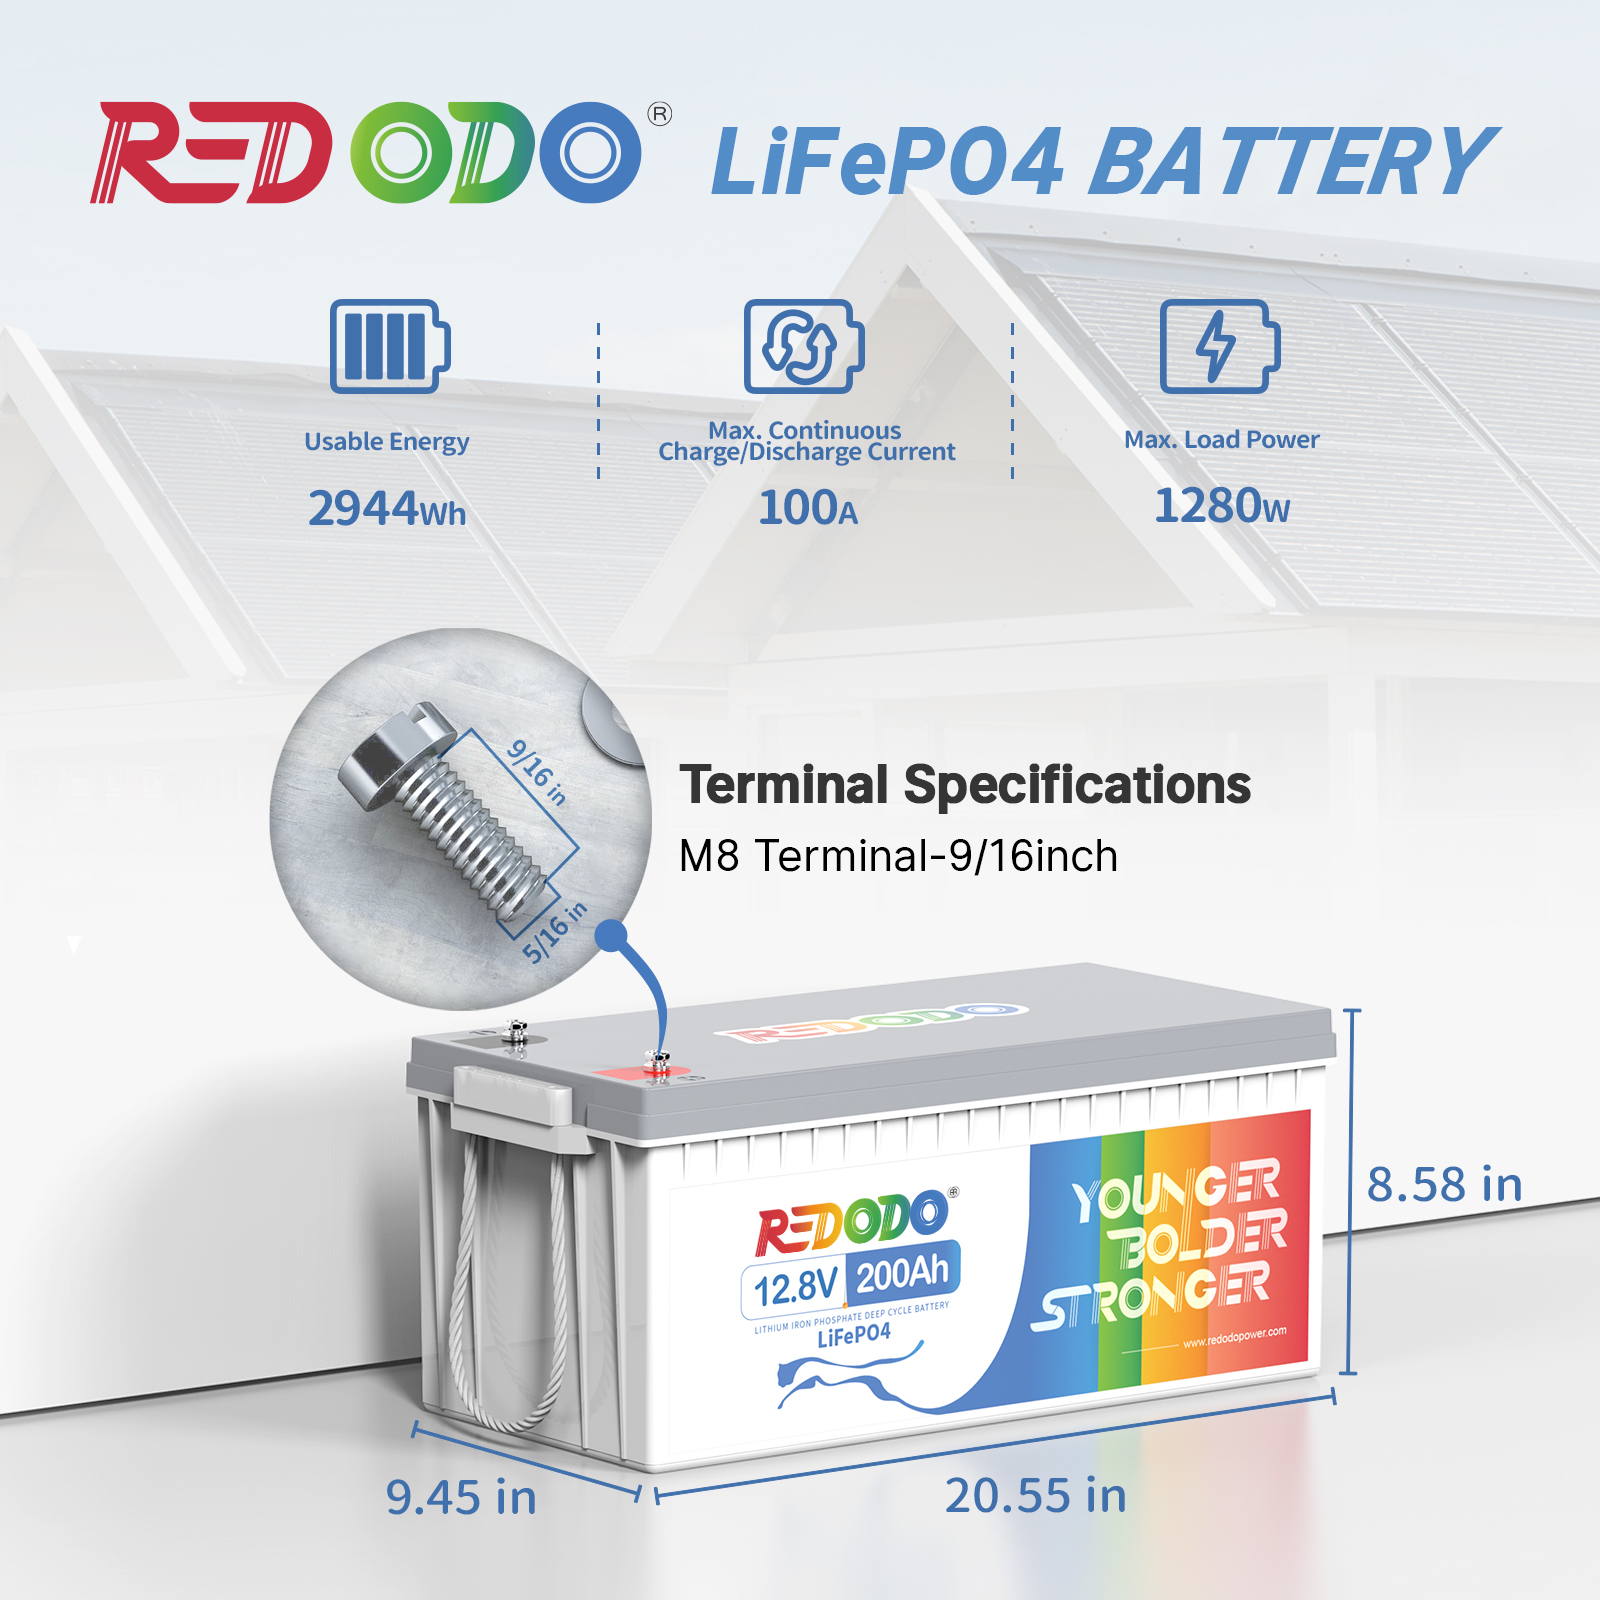 【Like New】Redodo 12V 200Ah Pro (230Ah) LiFePO4 Battery | 2.944kWh & 1.28kW Redodo Power